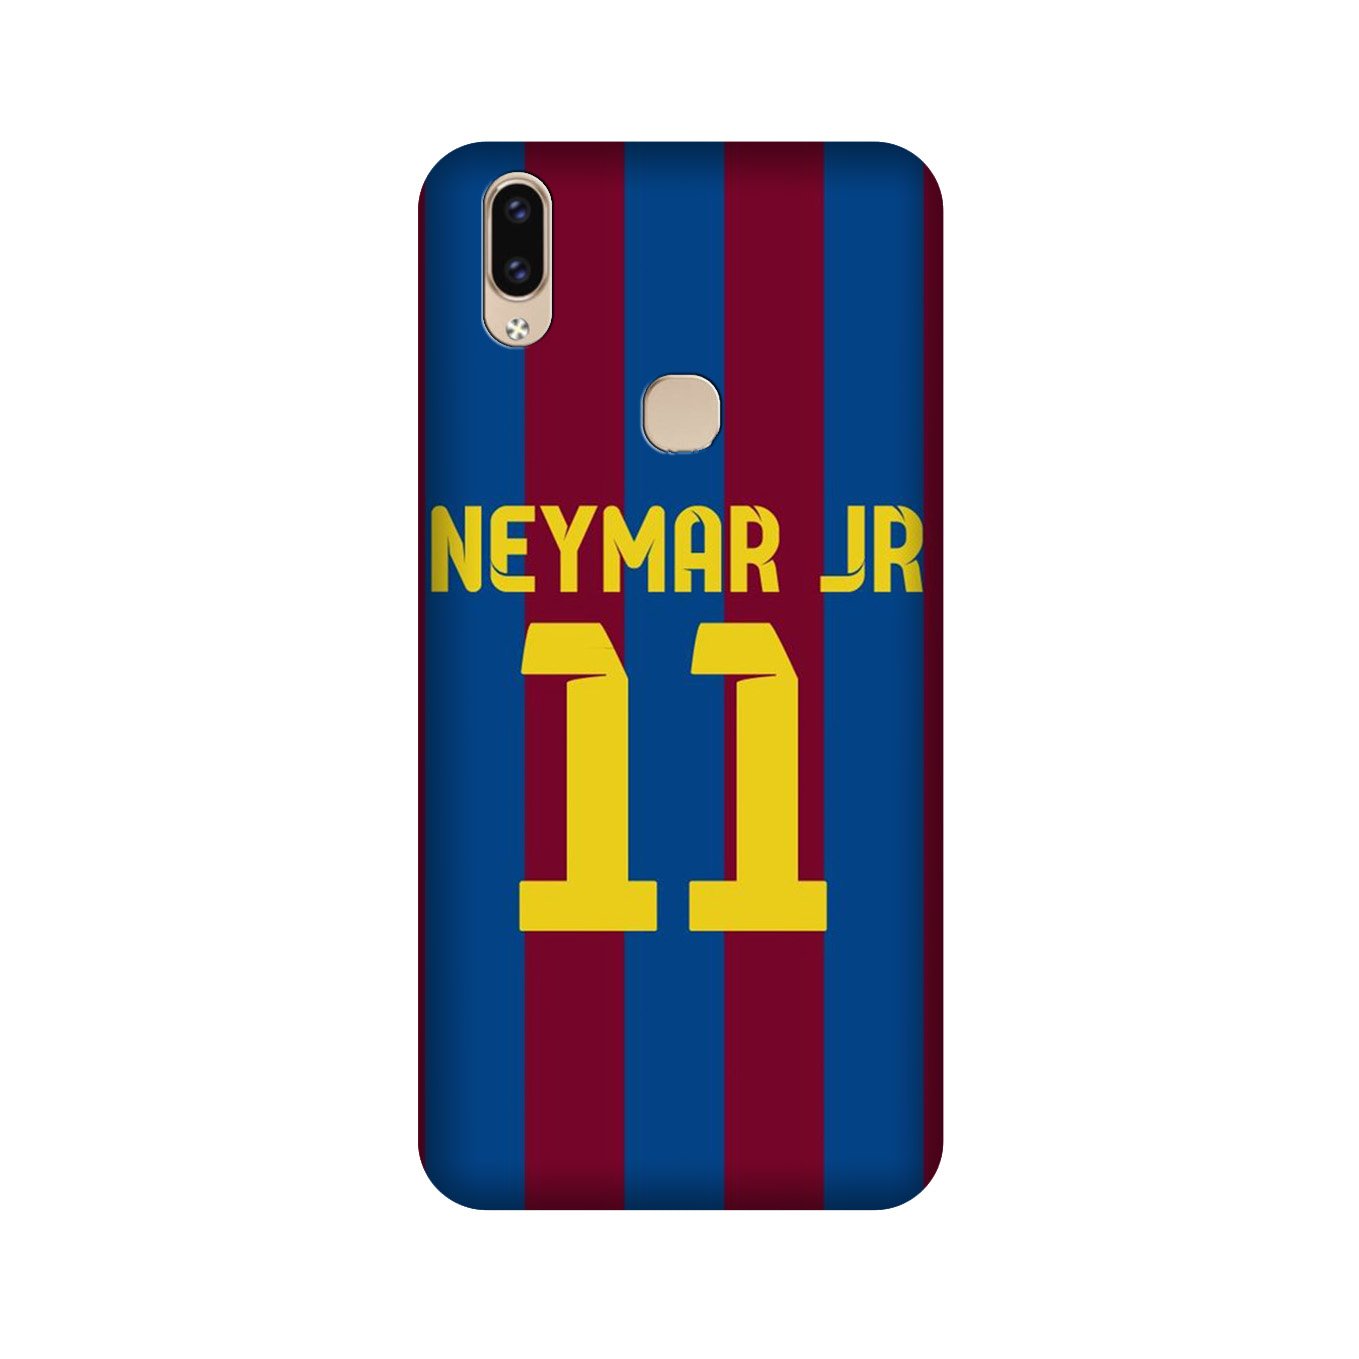 Neymar Jr Case for Vivo V9 pro  (Design - 162)